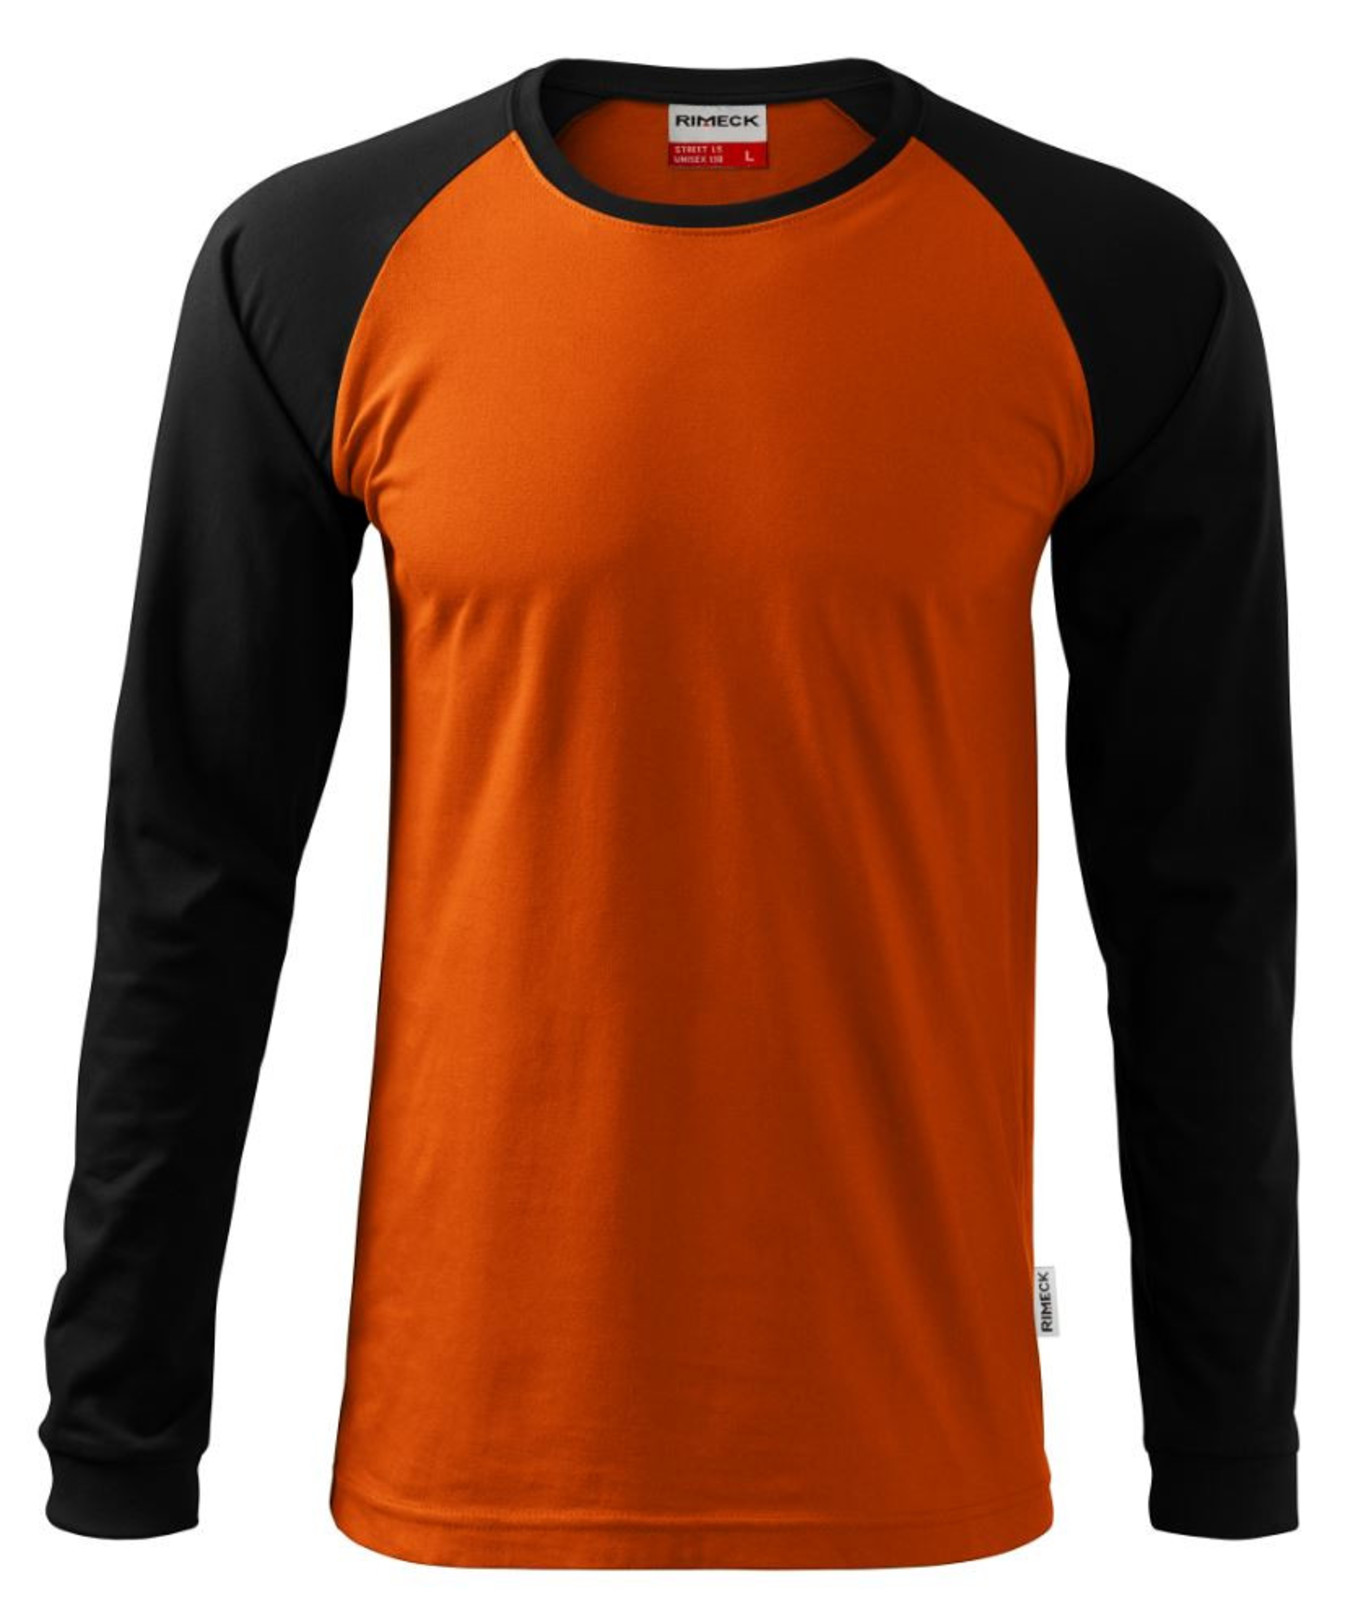 Unisex tričko s dlhým rukávom Rimeck Street LS 130 - veľkosť: M, farba: oranžová/čierna